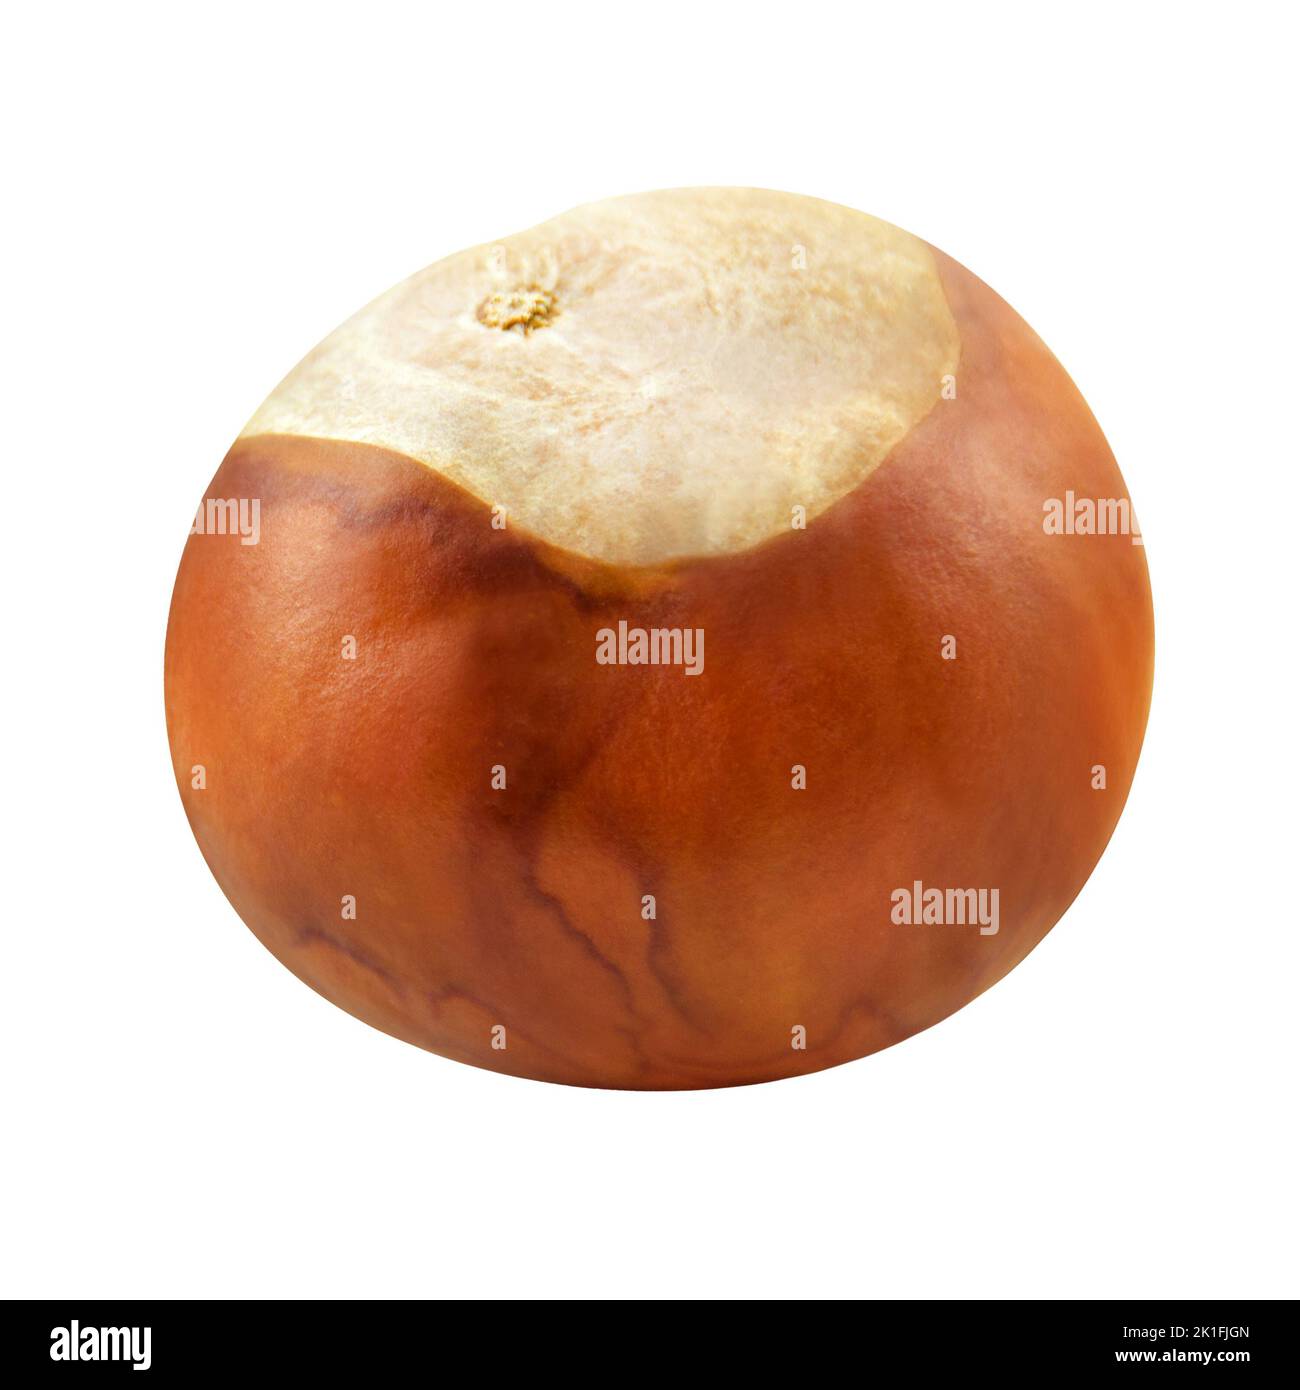 1 Chestnut on isolated on white background Stock Photo